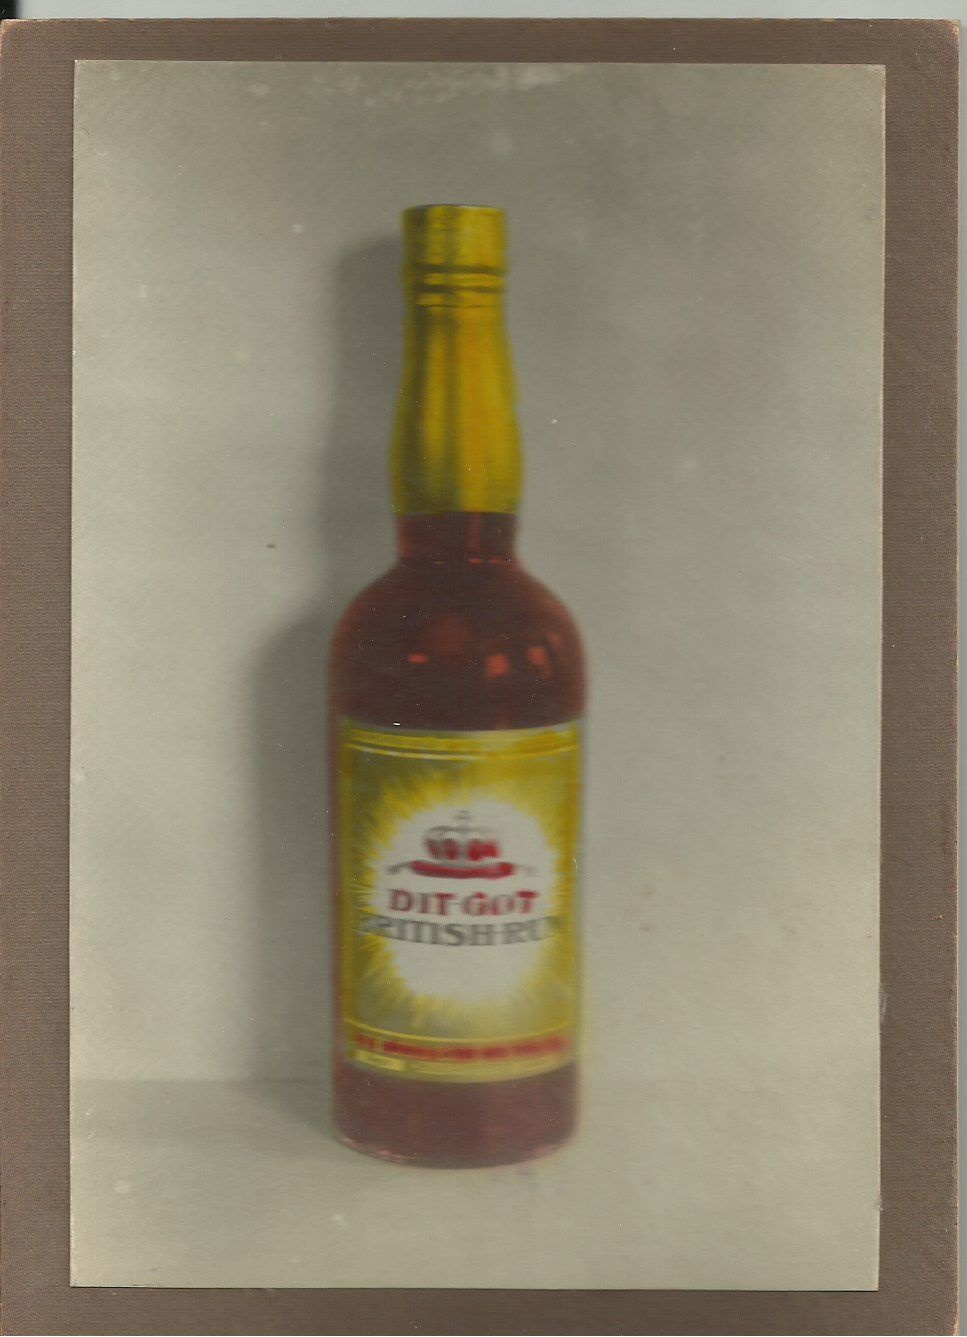 DIT GOT British Rum (Magyar Kereskedelmi és Vendéglátóipari Múzeum CC BY-NC-ND)